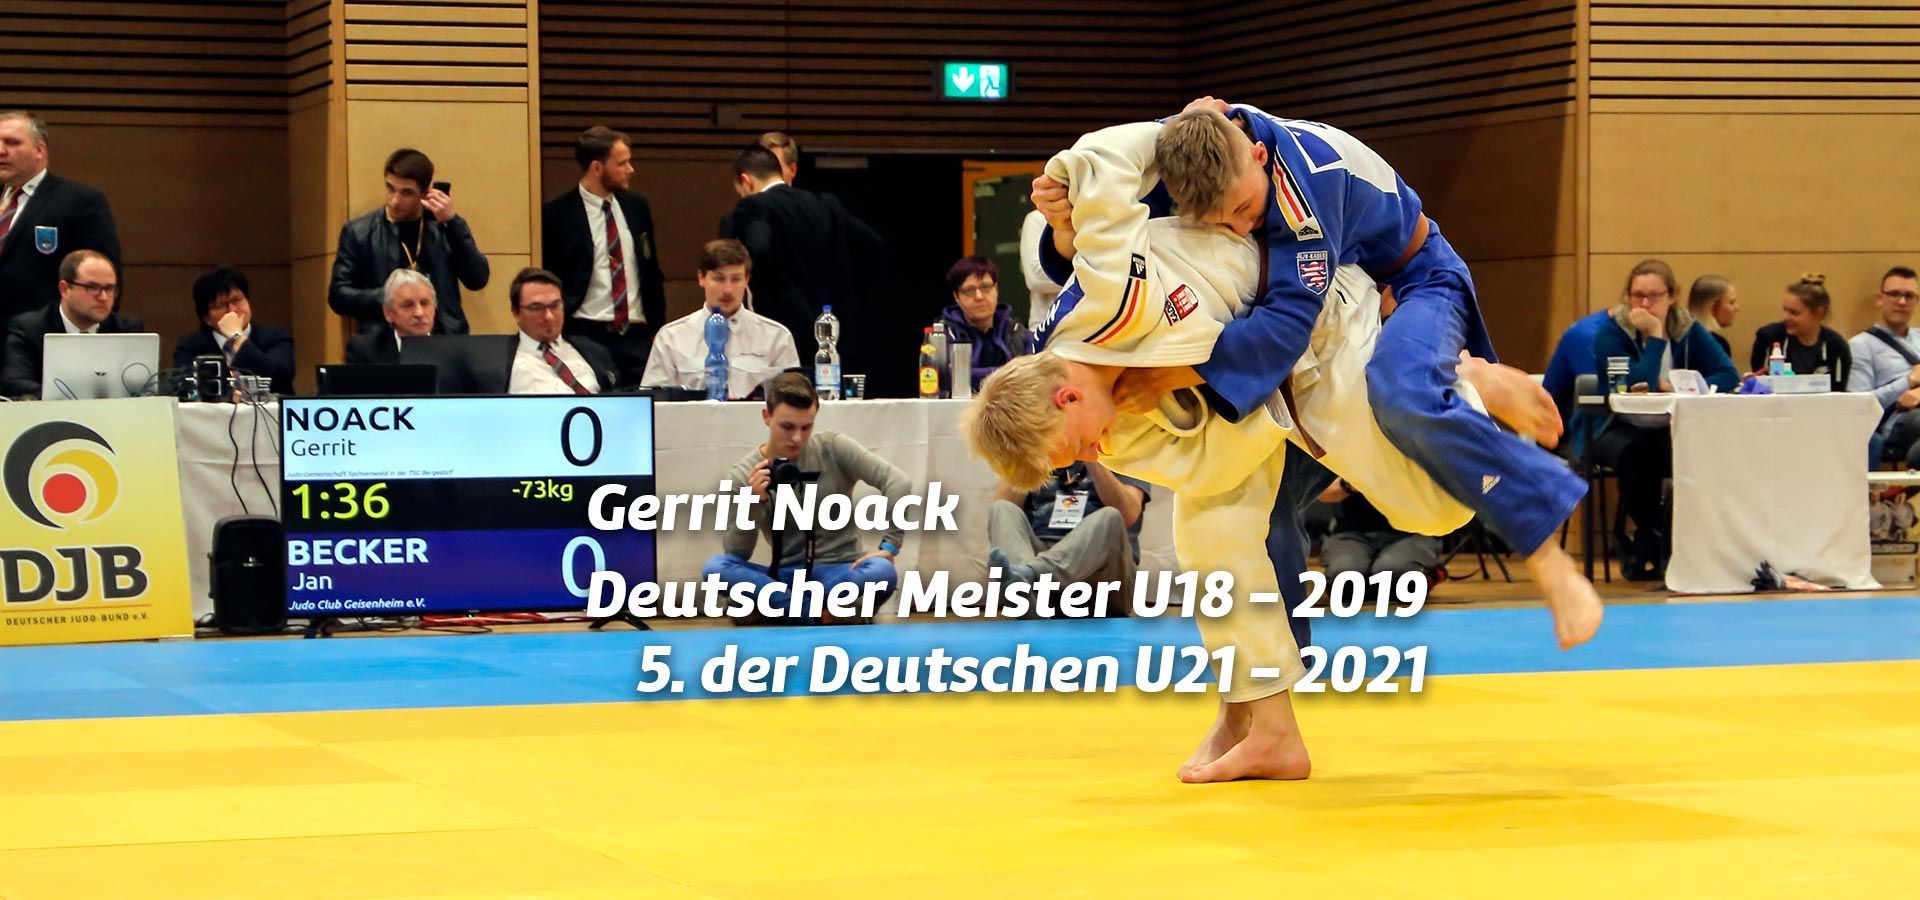 Gerrit Noack - Deutscher Meister U18 2019 und 5. der Deutschen U21 2021